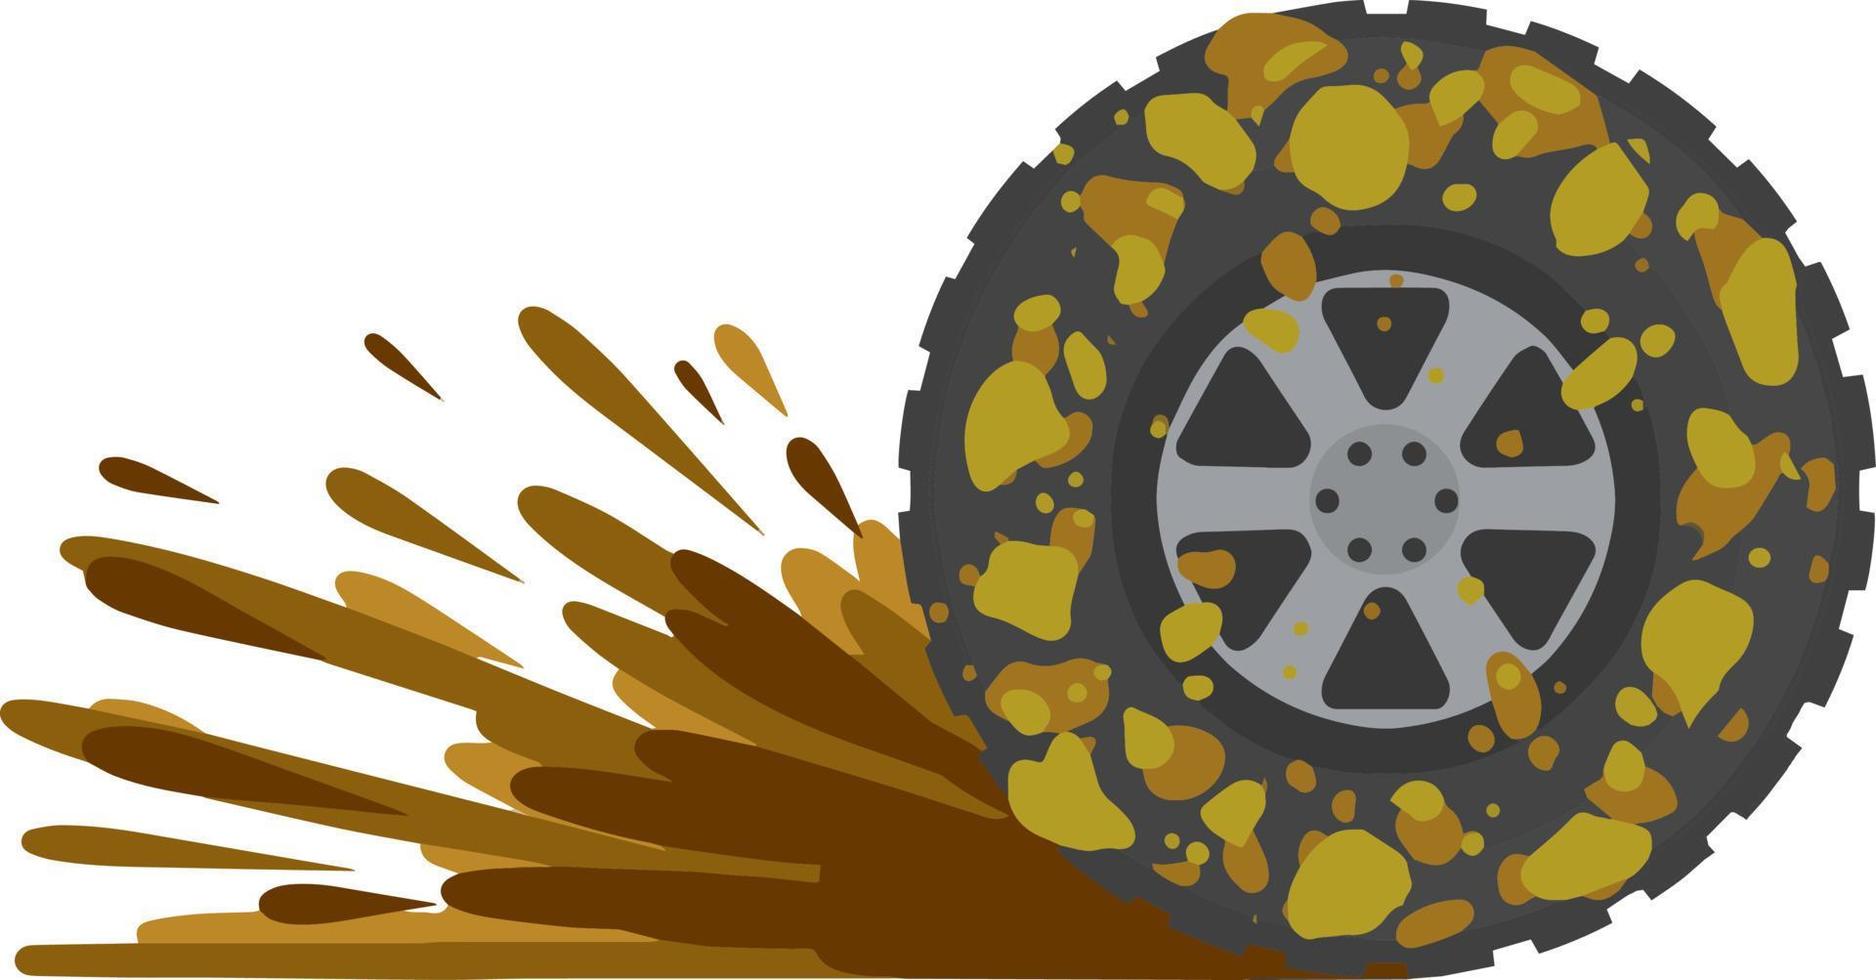 rueda sucia del camión. conducción todoterreno. tierra en el neumático. símbolo de lavado de autos. basura y suciedad. ilustración plana de dibujos animados vector